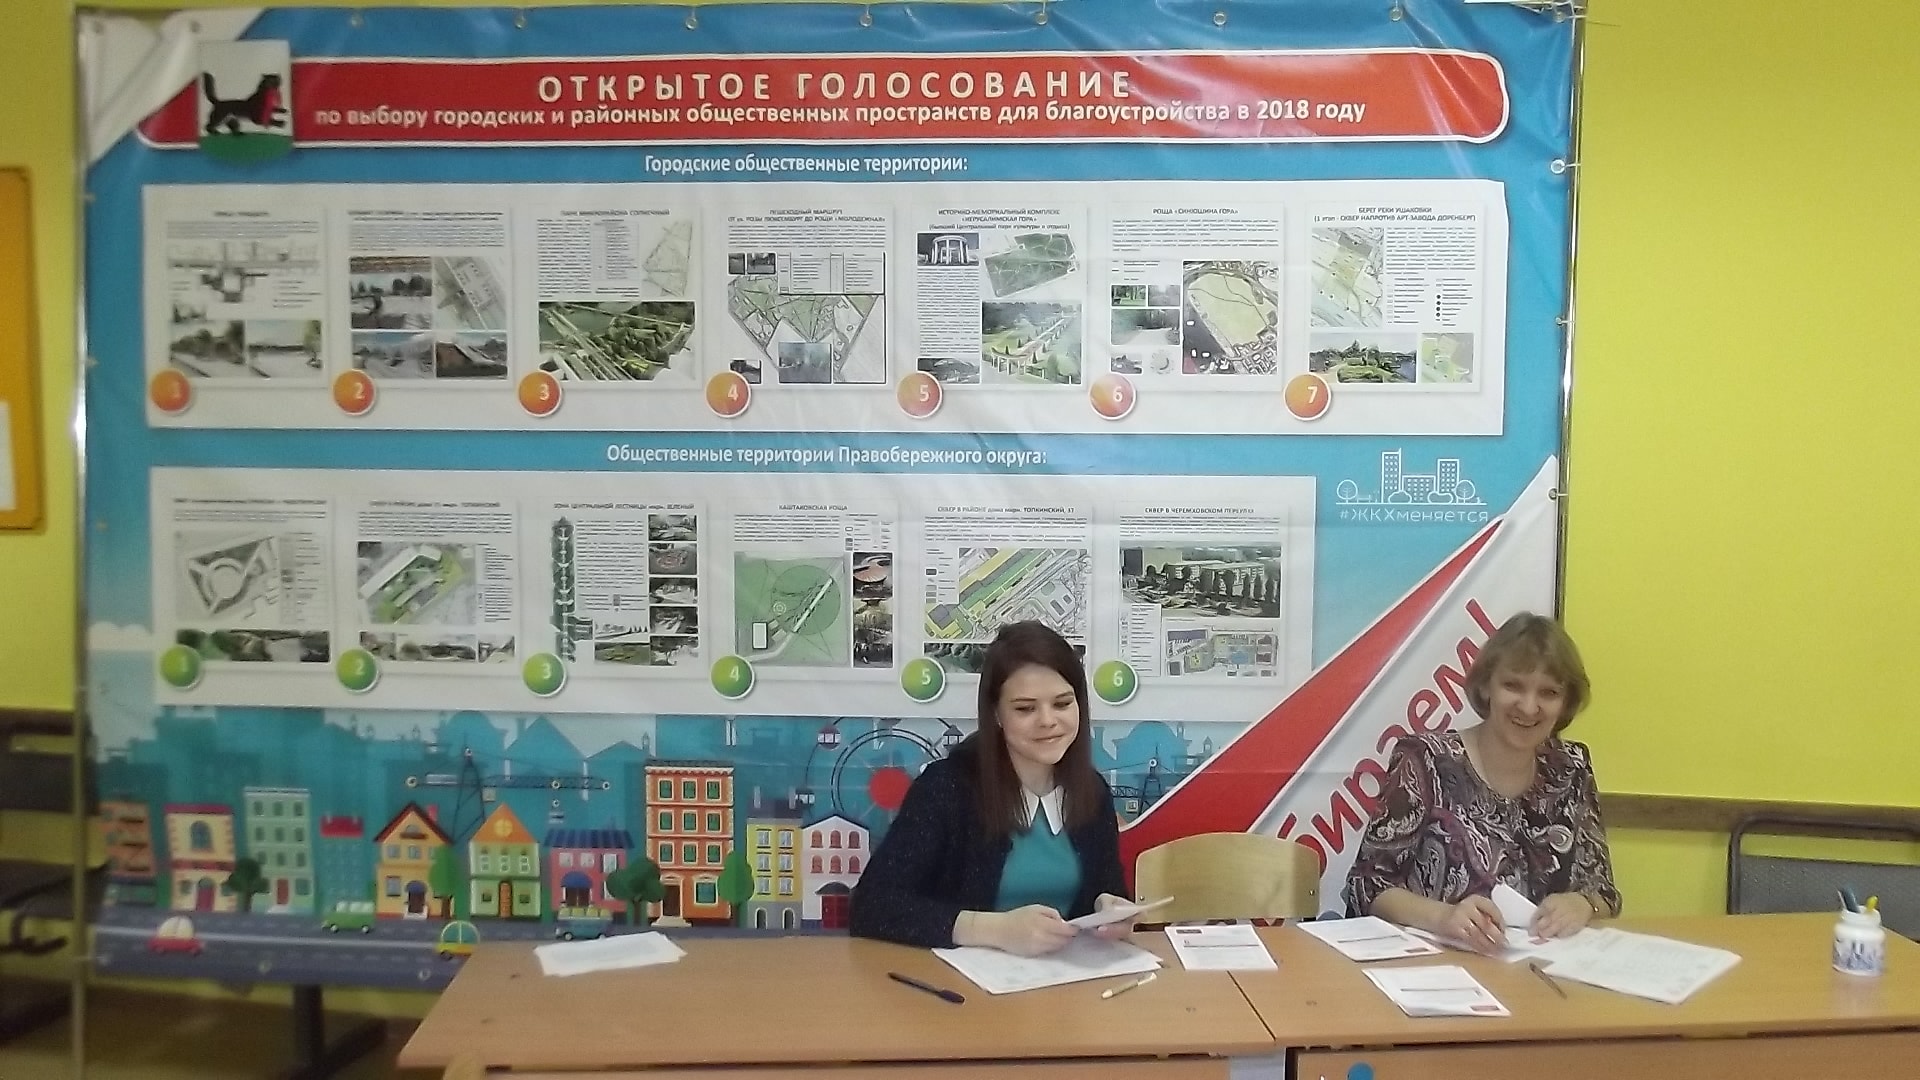 Открытое голосование Комфортная городская среда г. Иркутска 18 марта 2018 года